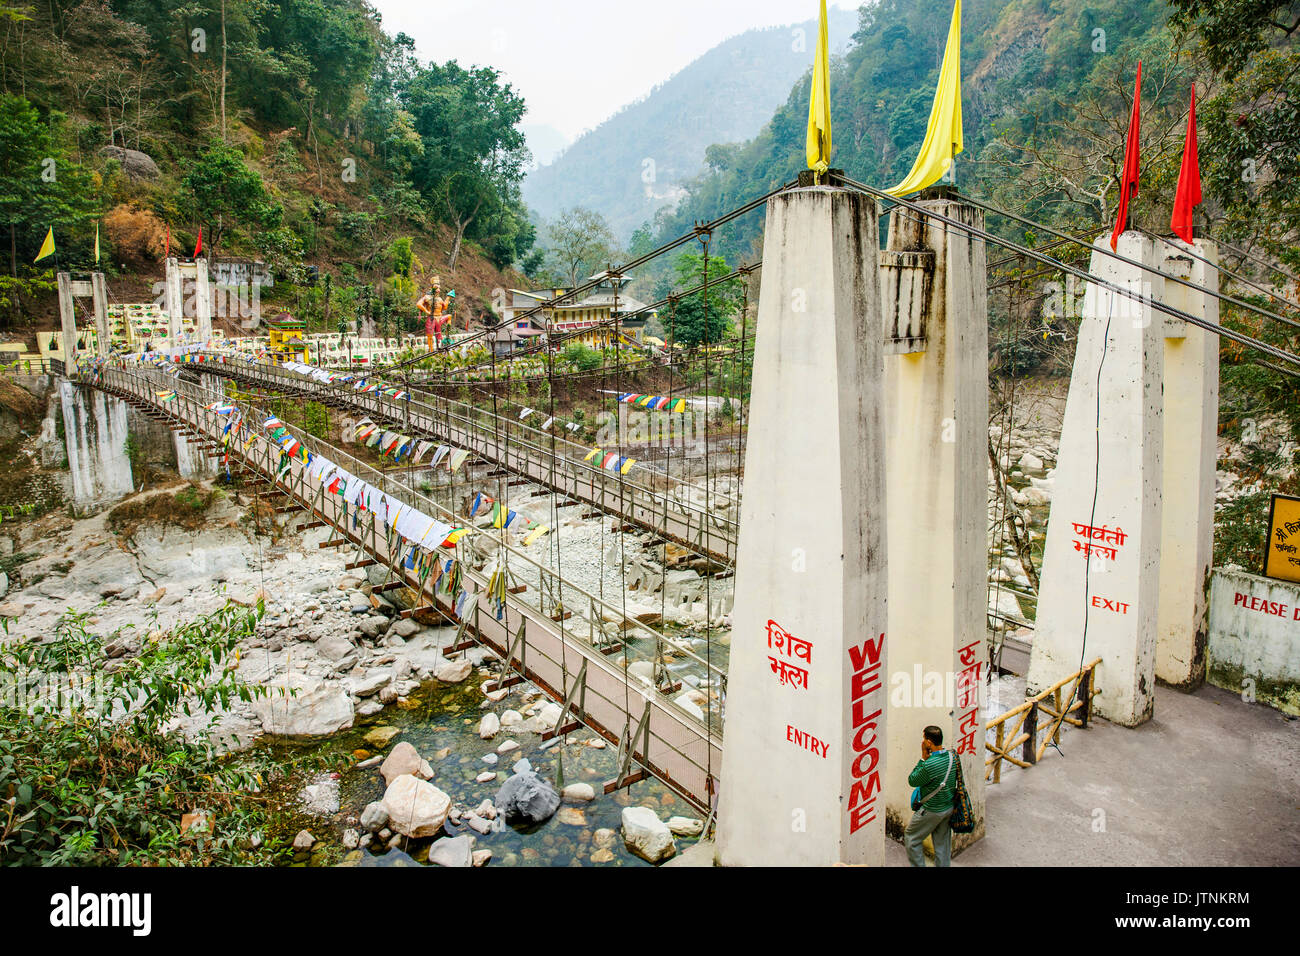 Legship Kirateshwar Mahadev Temple à l'Ouest, le Sikkim, Inde est aussi connu localement comme Shiv Mandir. Il est situé sur les rives de la magnifique rivière Rangit. Un pont suspendu au pied prend la dévots de son emplacement attrayant. Les gens de partout dans l'état visiter ce lieu saint de l'Eminence. Selon la croyance populaire, celui qui vénère ici gagnerez vertus de deux fois la vie. Banque D'Images